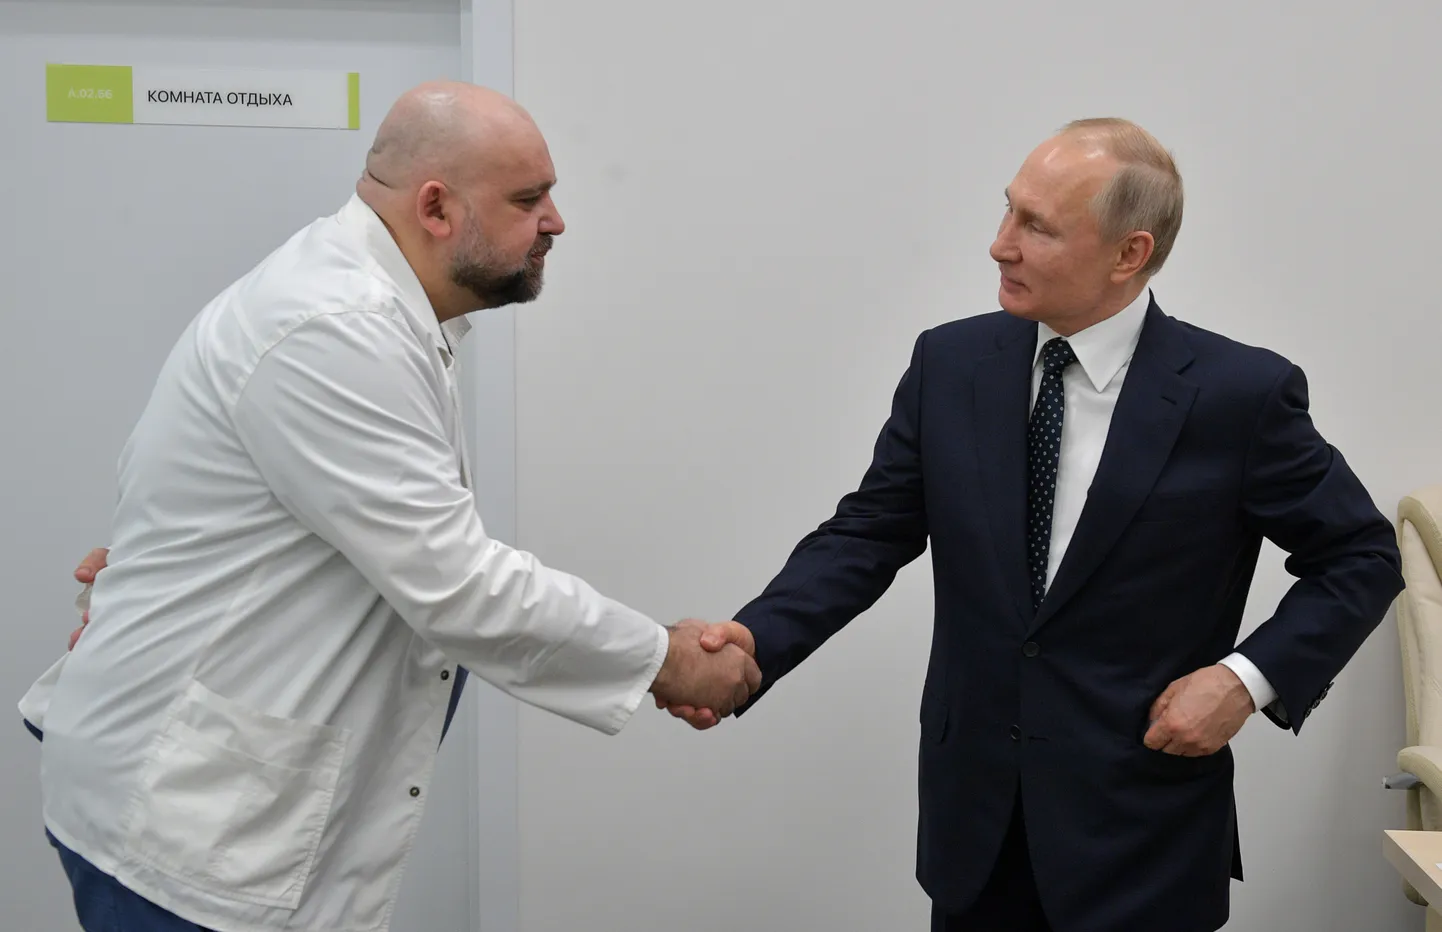 Venemaa president Vladimir Putin kätles 24. märtsil 2020 arsti Deniss Protsenkoga, kellel hiljem diagnoositi koroonaviirus